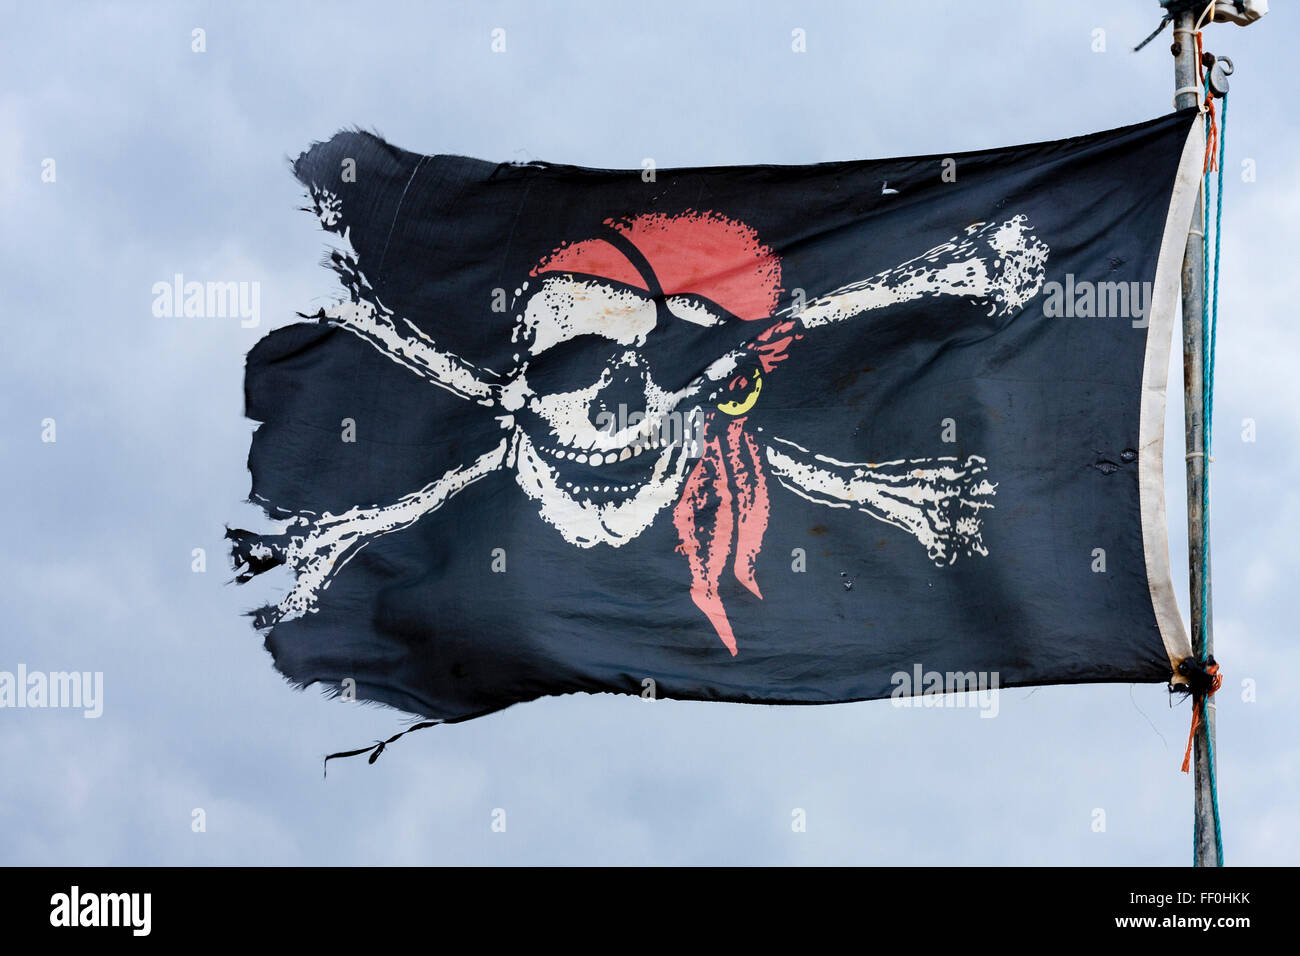 Bandera Pirata - Banderas Puerta de Hierro